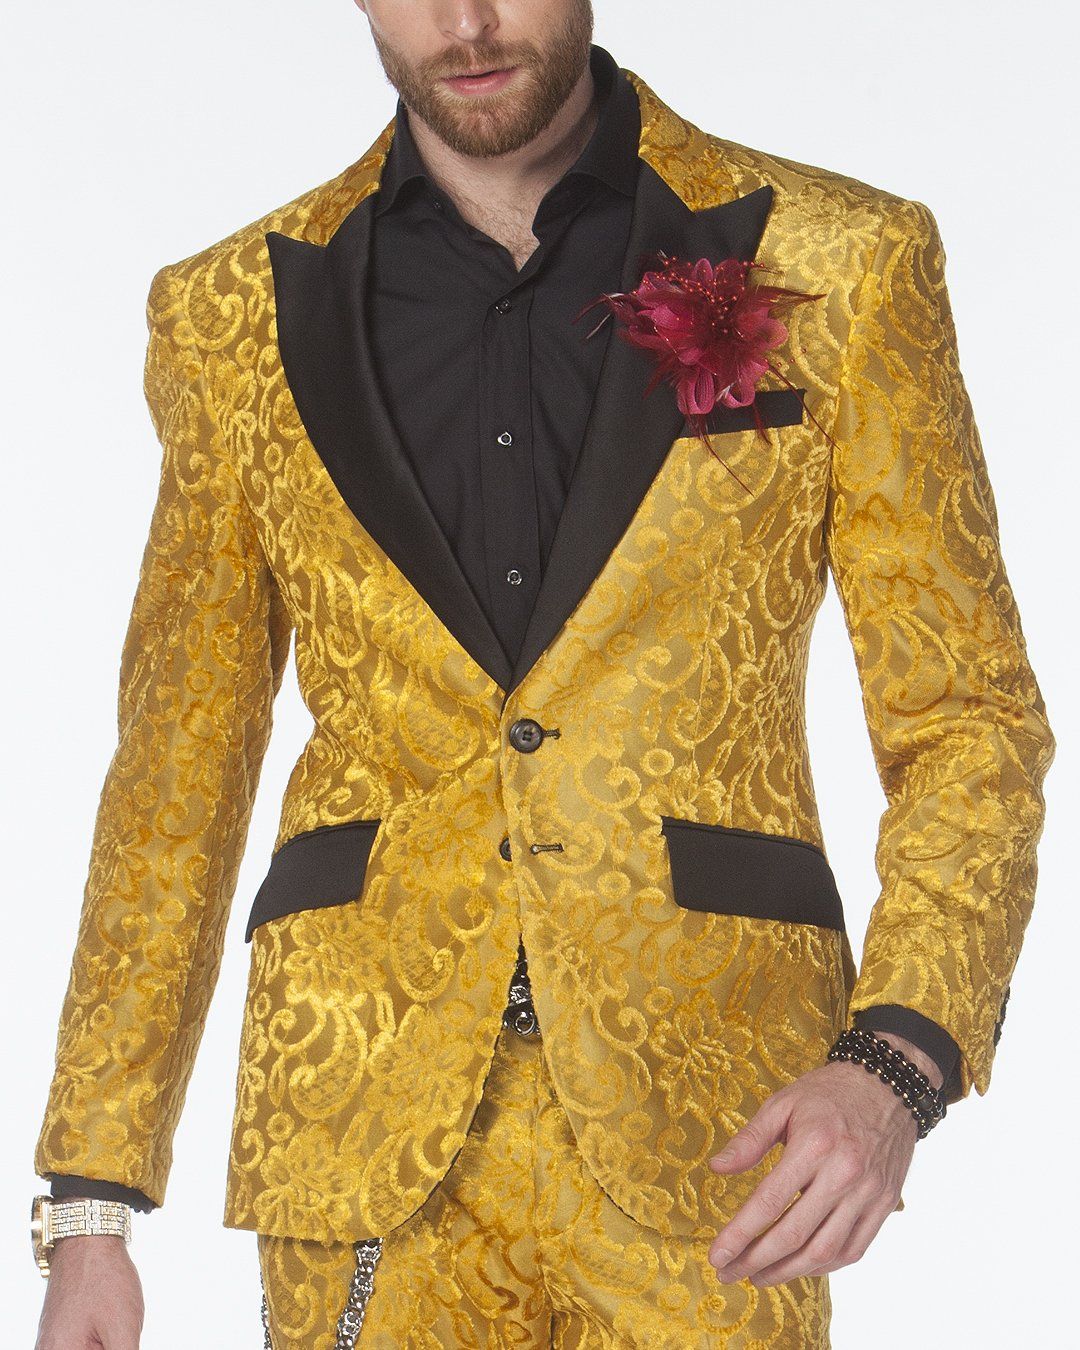 Amazon.com: Men Luxury Gold Suit 2 Piece Set Business Banquet Party Dress  Wedding Suits for Men : Clothing, Shoes & Jewelry